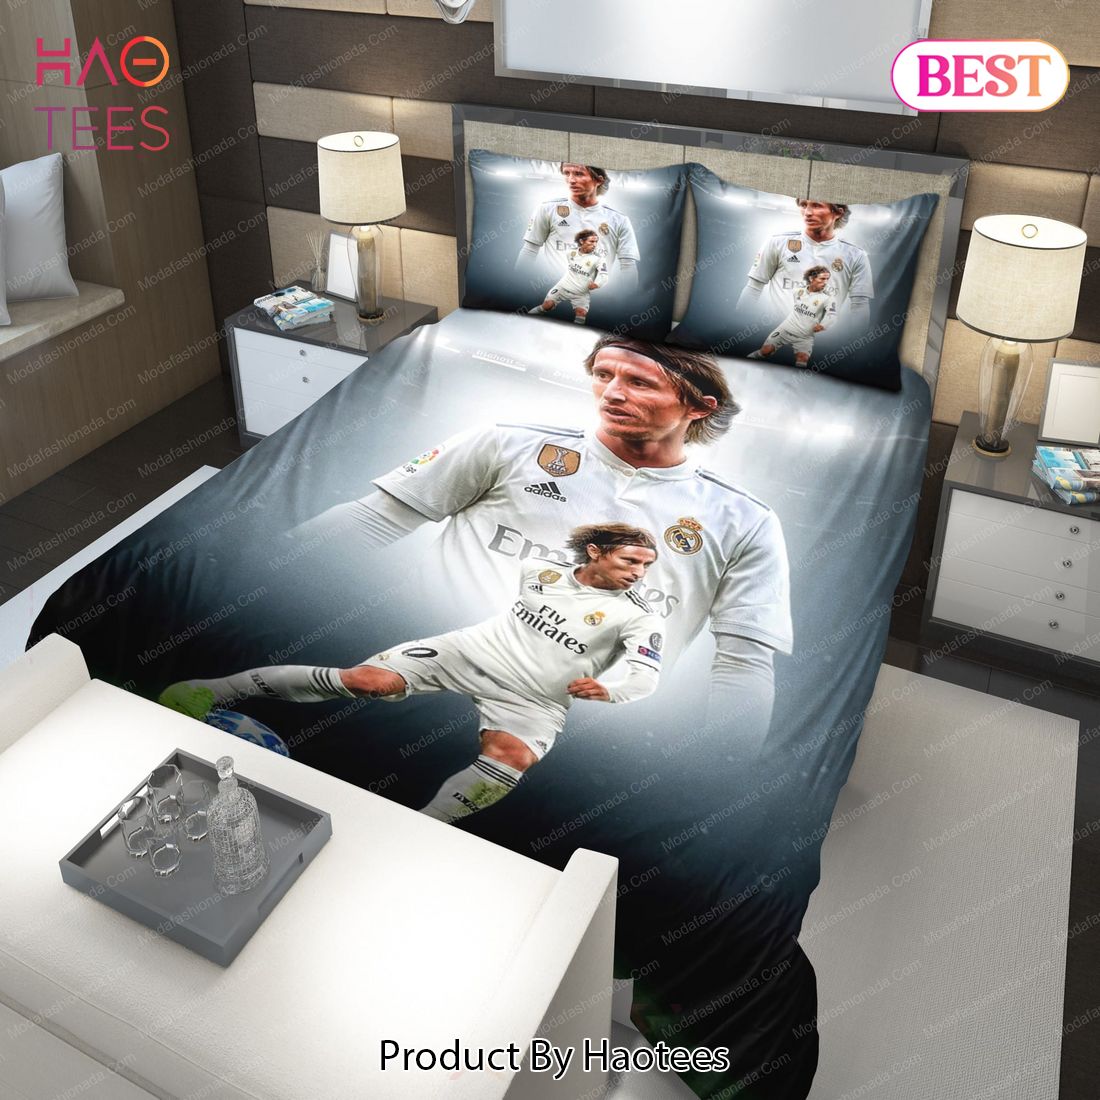 Buy Luka Modric Real Madrid 40 Bedding Sets Bed Sets, Bedroom Sets, Comforter Sets, Duvet Cover, Bedspread